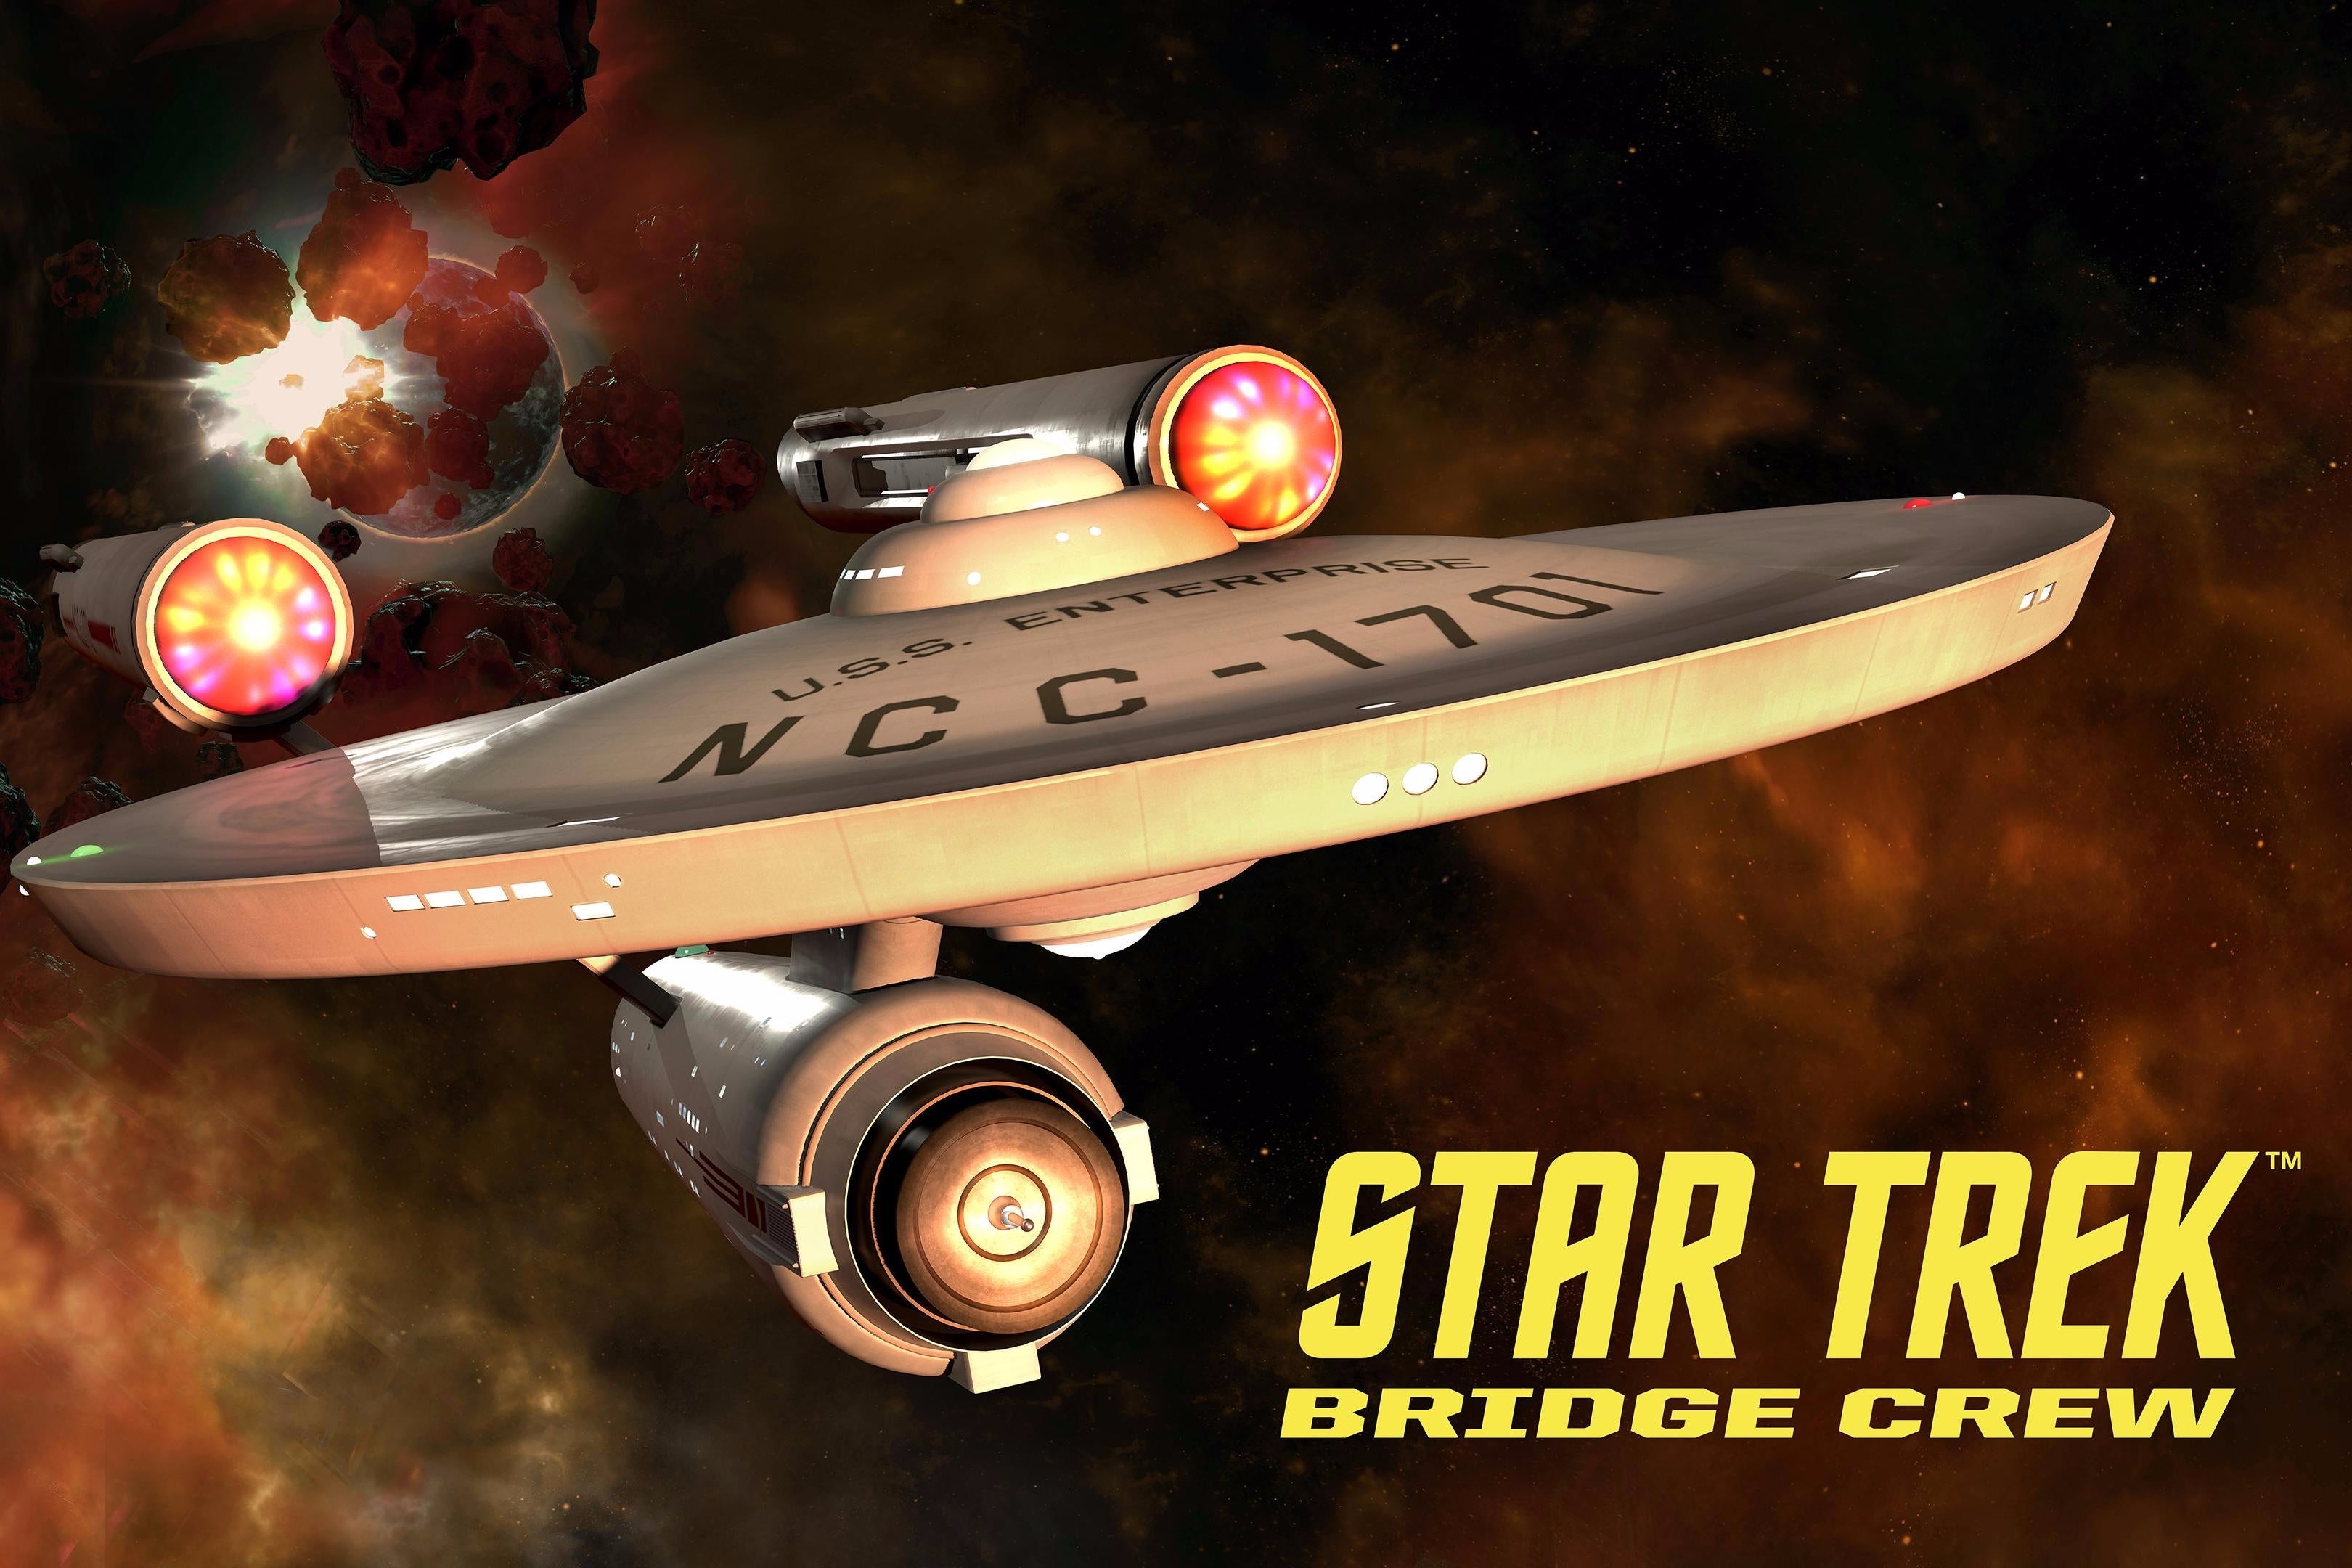 Immagine di Star Trek: Bridge Crew, confermata la presenza del ponte di comando della U.S.S. Enterprise